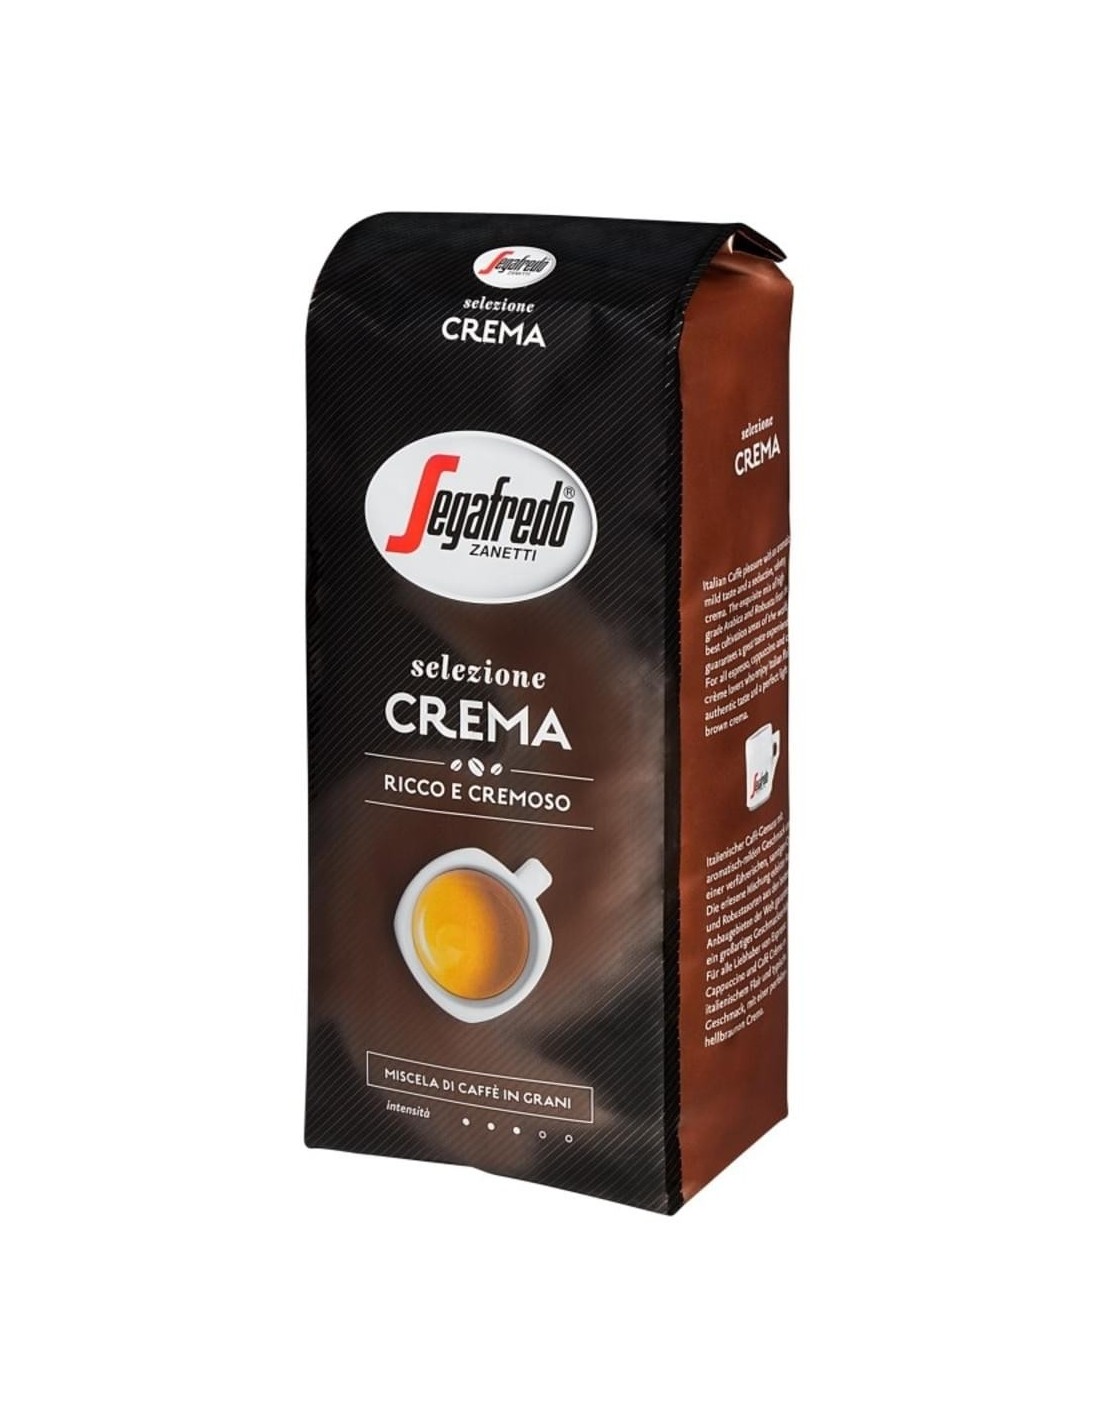 Cafea boabe Segafredo Selezione Crema, 1kg alcooldiscount.ro